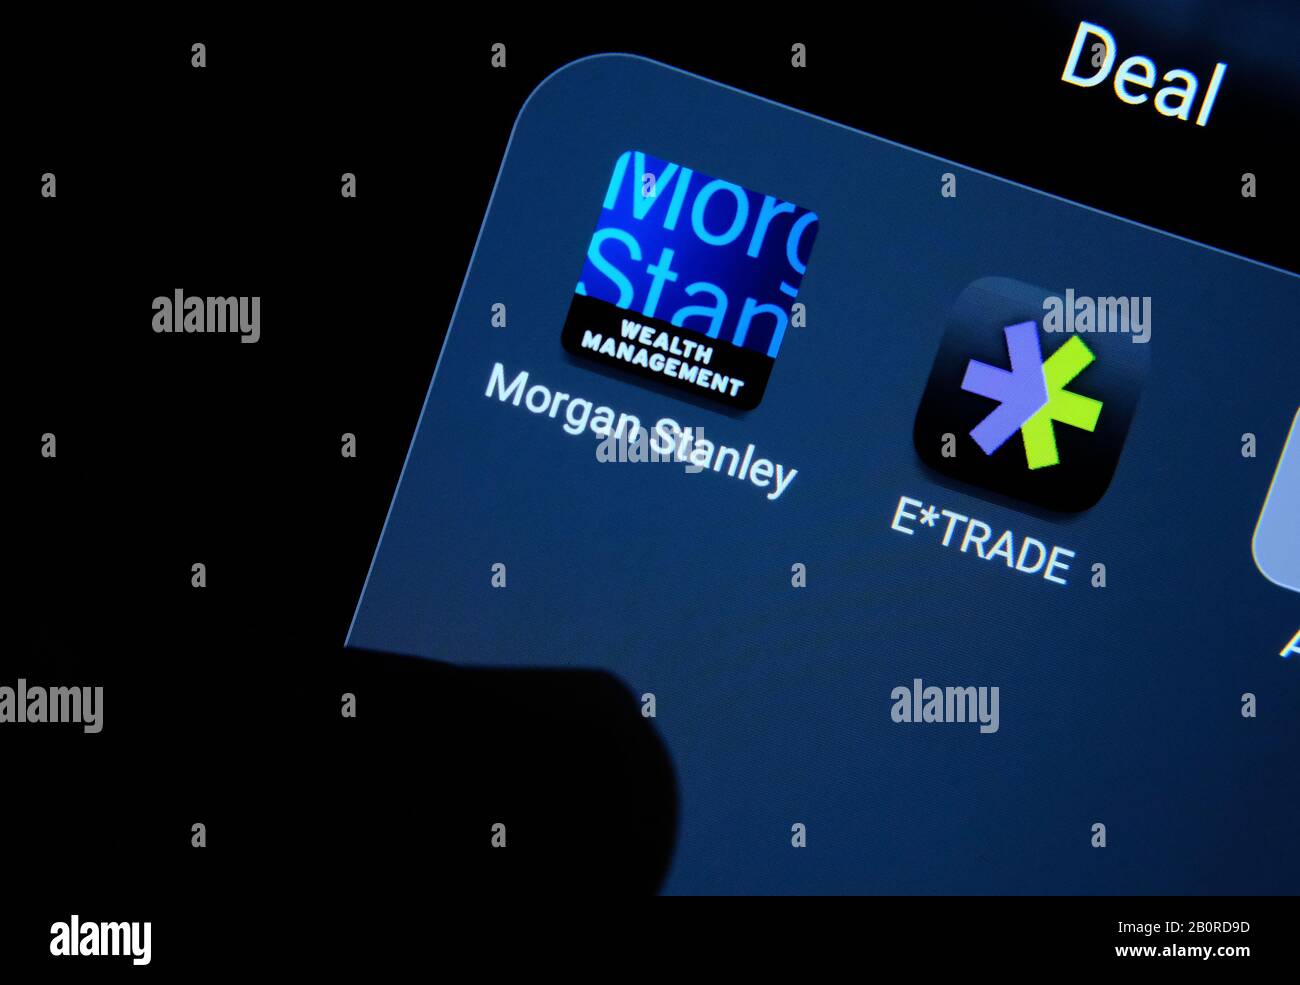 Morgan Stanley et les applications E-Trade sur un écran de smartphone et pointent le doigt vers eux. Concept d'acquisition d'entreprise. Banque D'Images